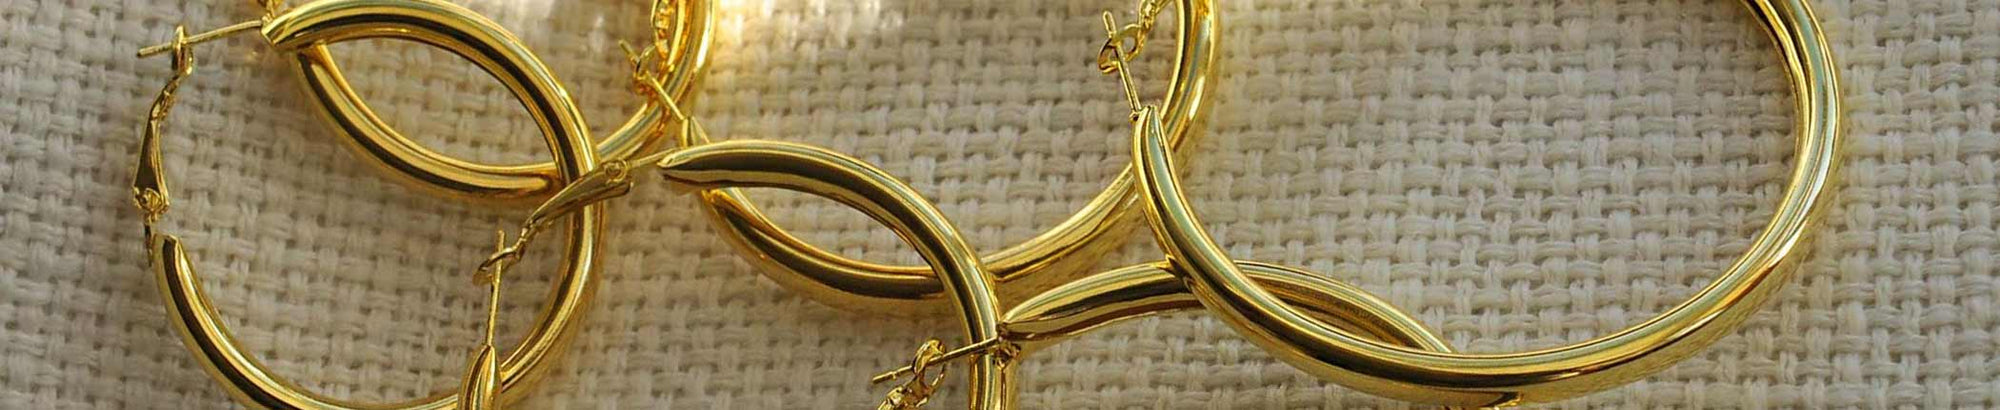 Christmas gifts: Gold hoop earrings top 10